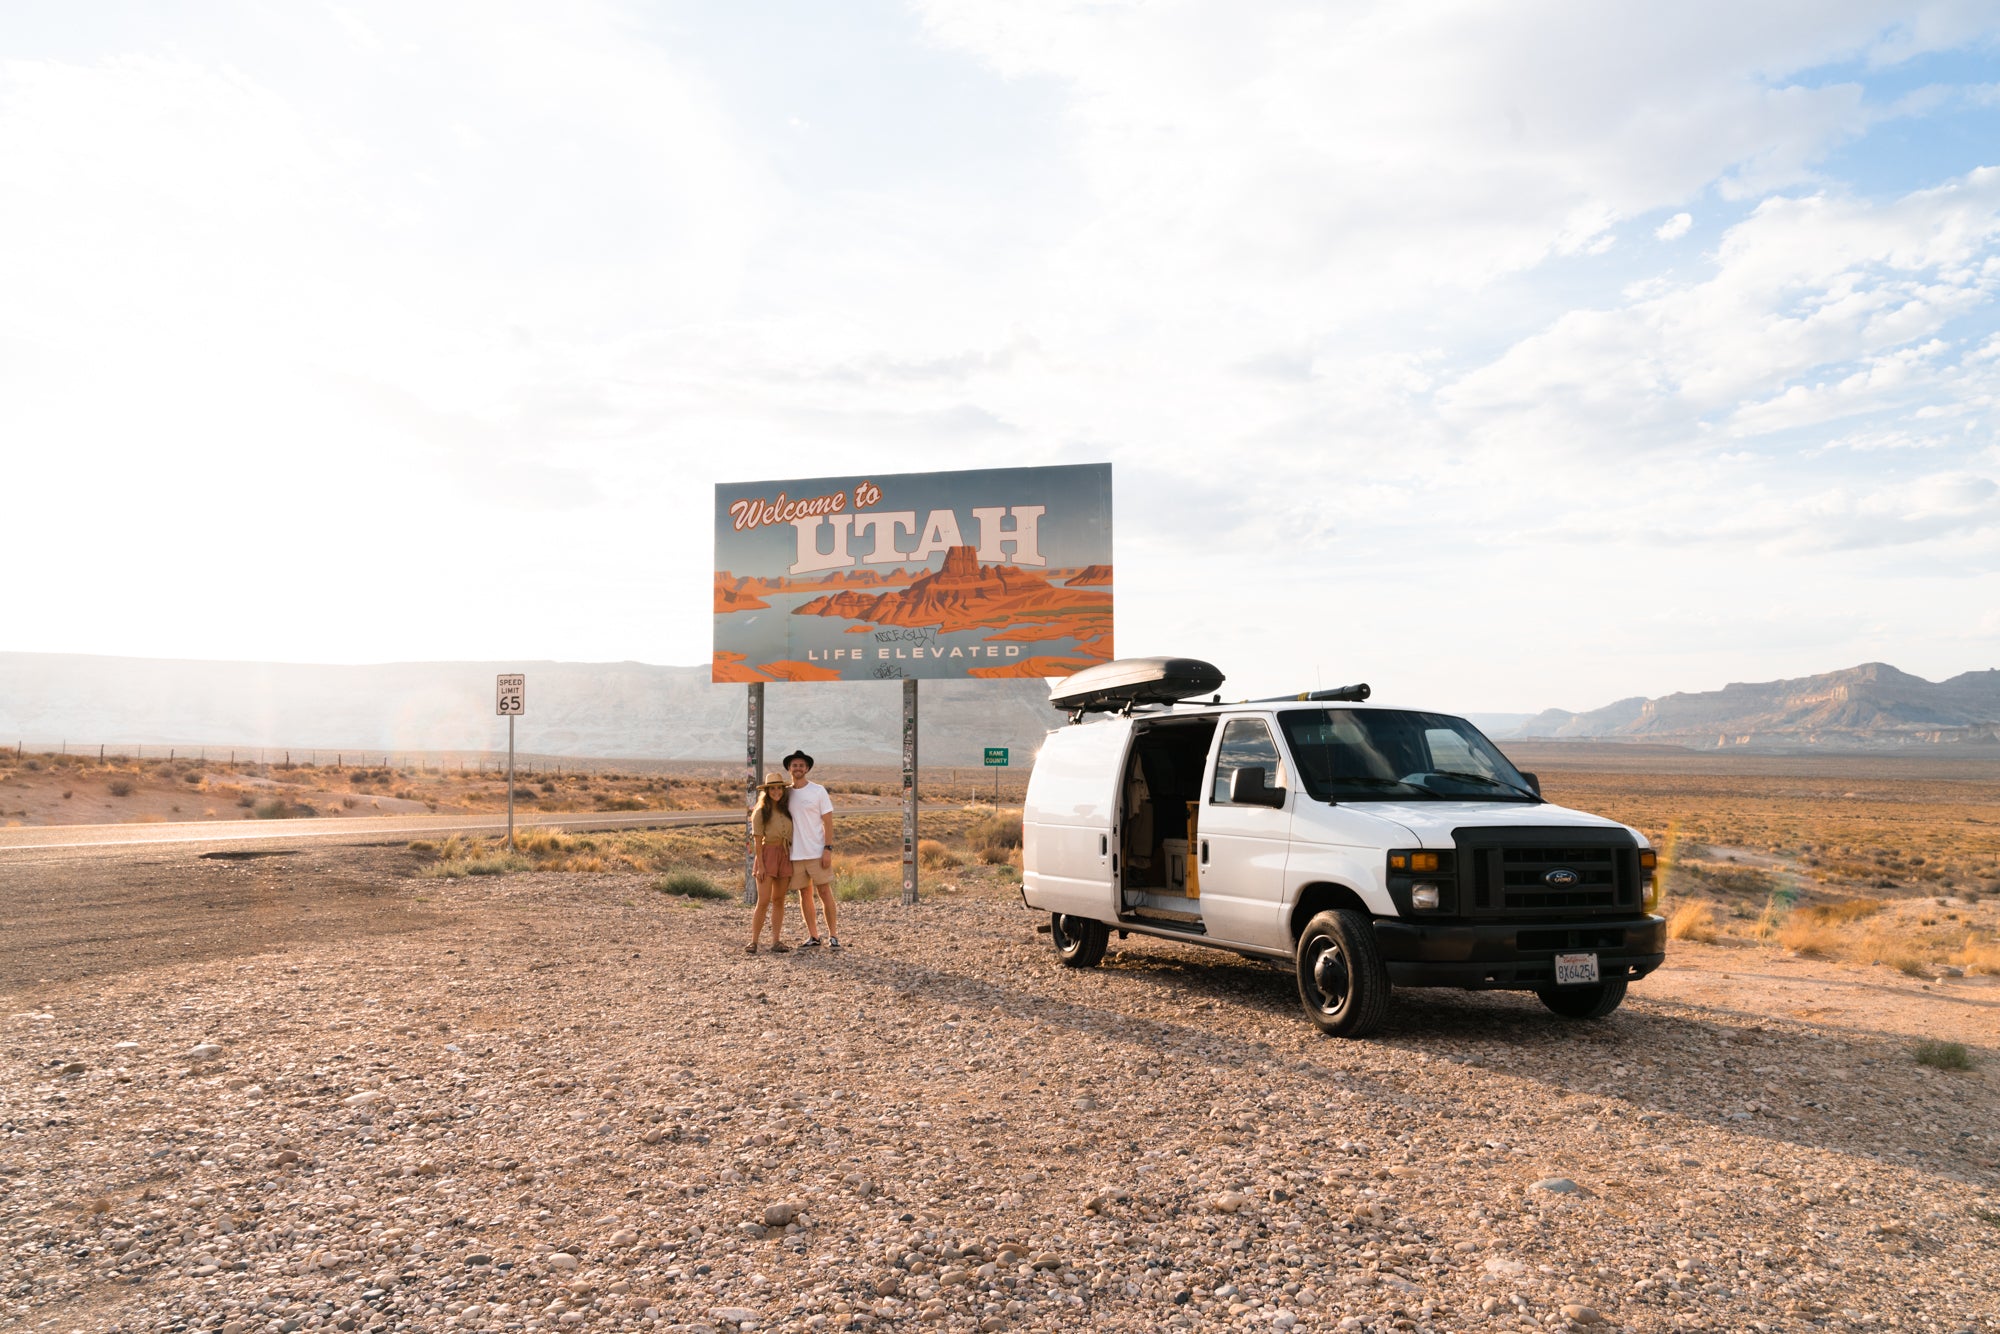 Van in front of "Welcome to Utah" sign